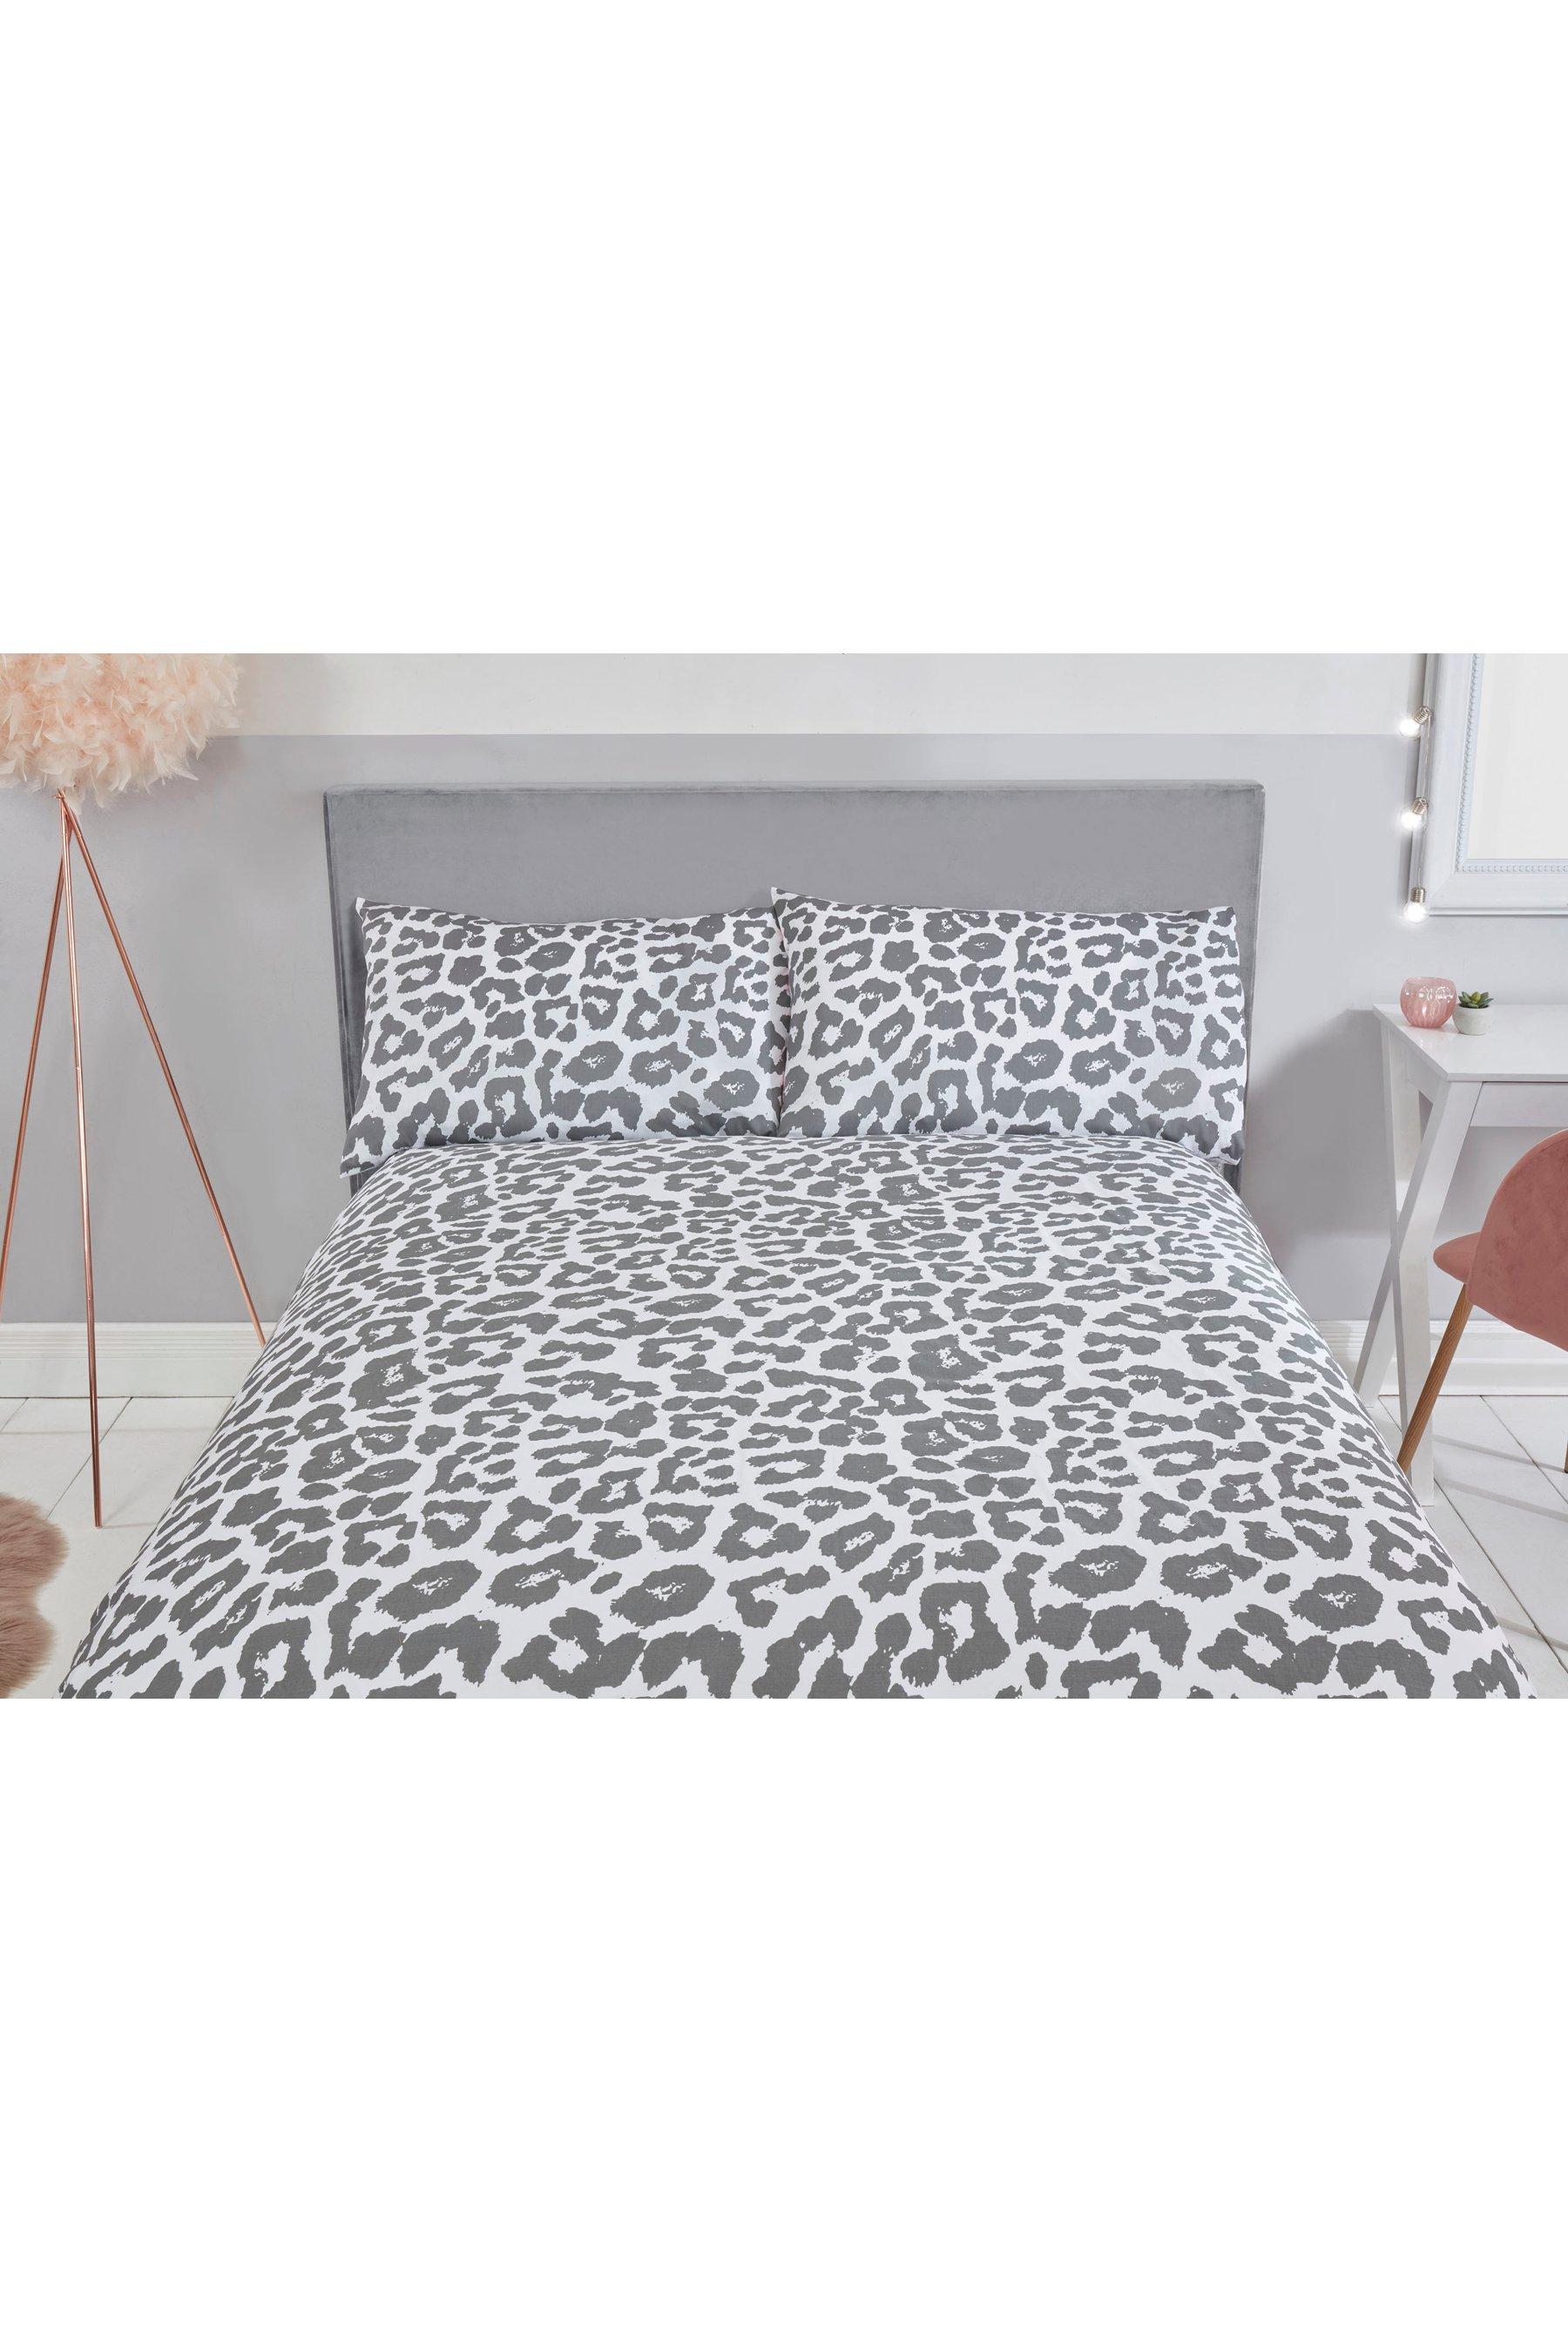 Duvet Coco Moon Little Mix Aminal Print Kids Single Or Double Bed Duvet Bedding Set Genuine Little Mix Merchandise 